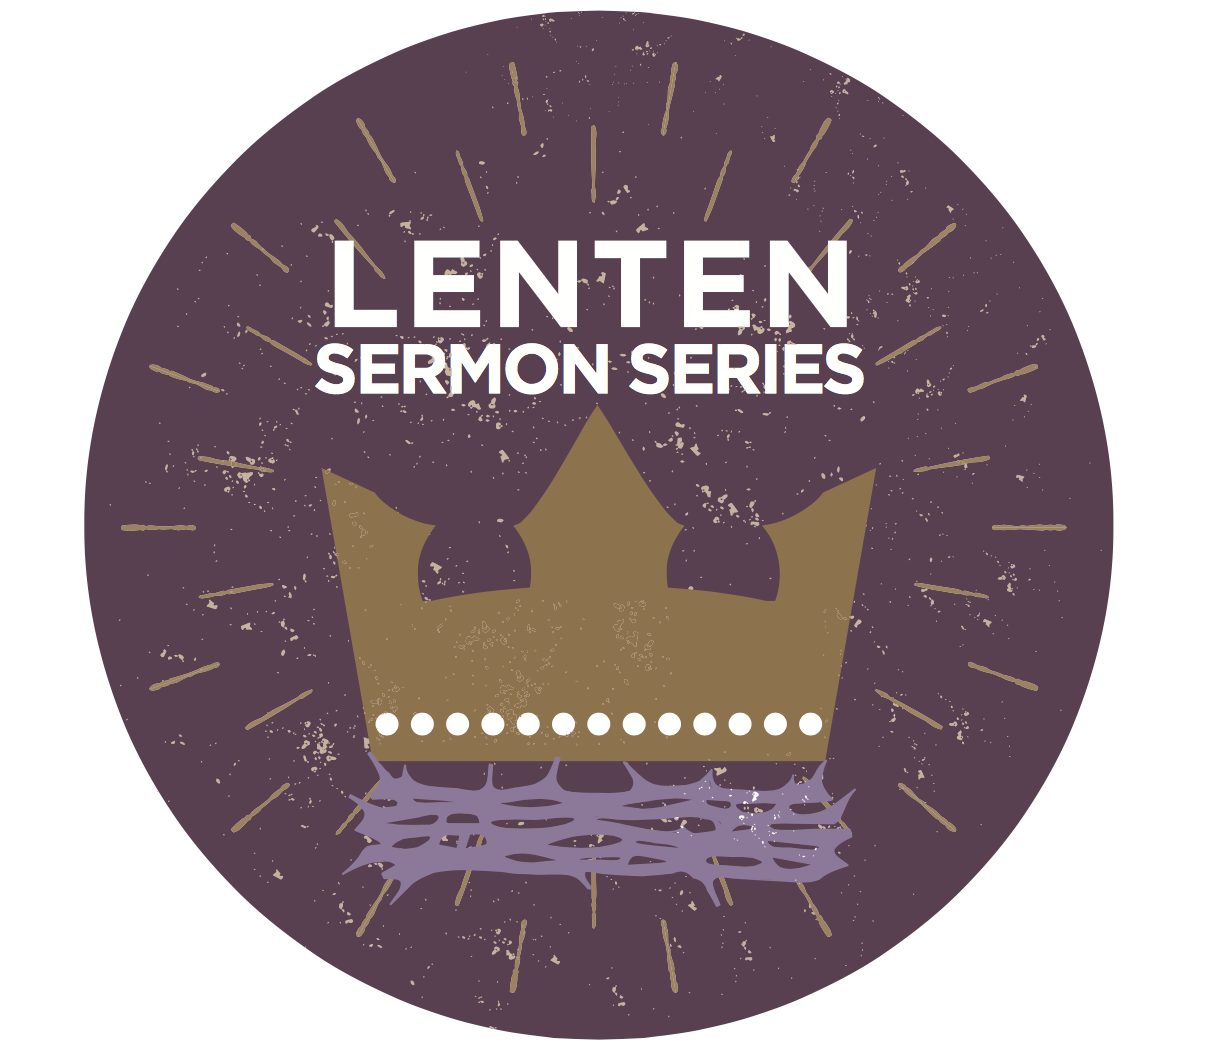 Pre-Lenten Workshop set for Jan. 15, 2016